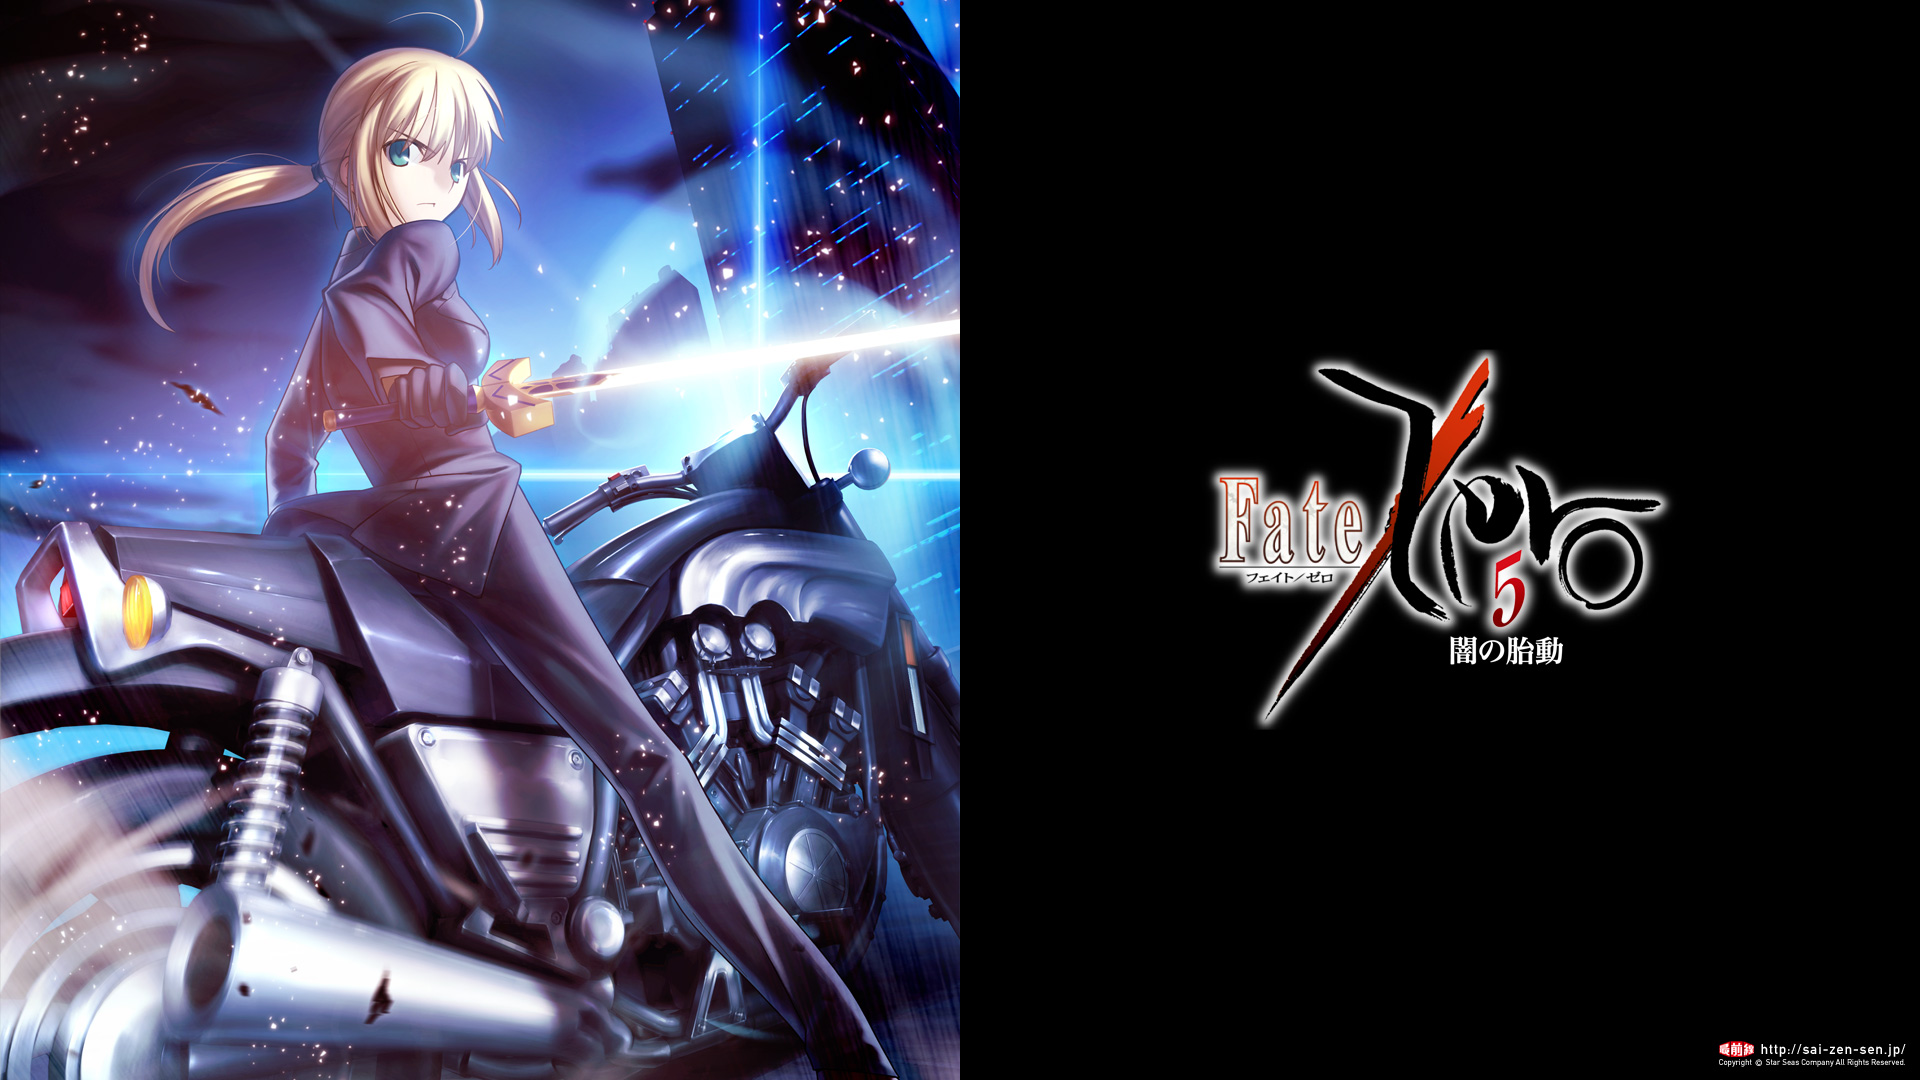 Fate Zero Download 星海社文庫 Fate Zero 最前線